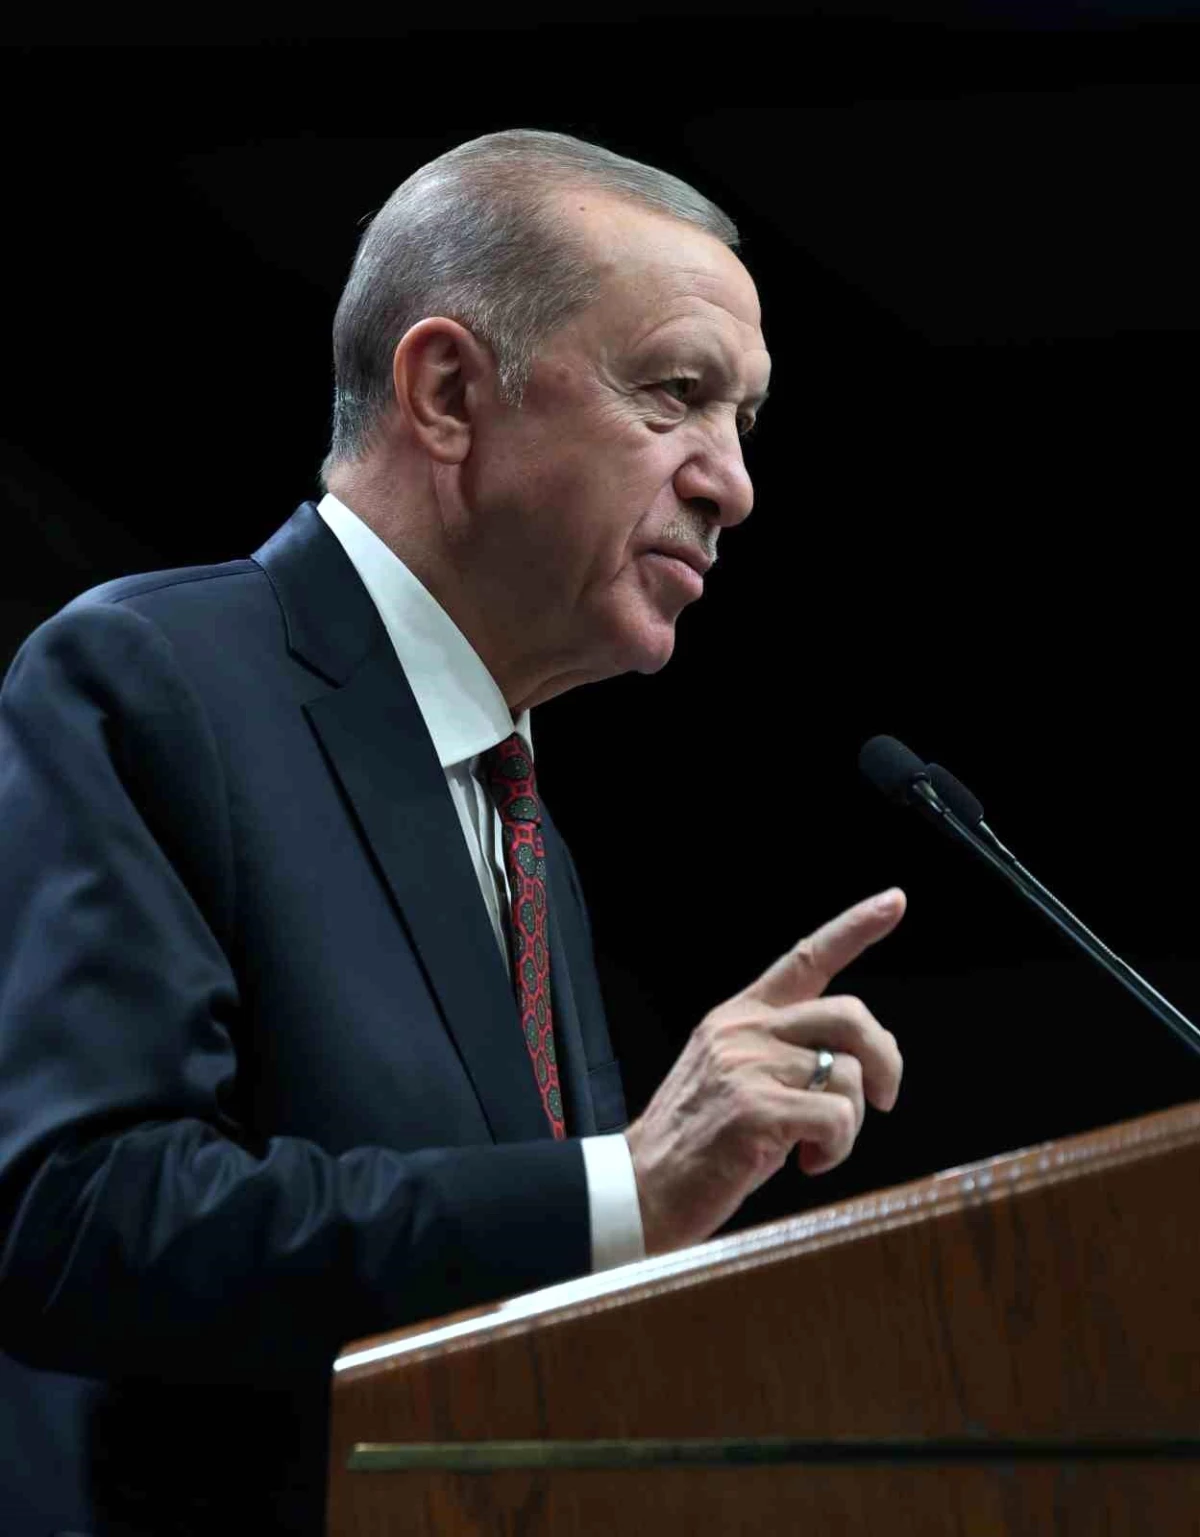 Cumhurbaşkanı Erdoğan: "Holokost utancı Avrupalı liderleri adeta esir almış durumda"